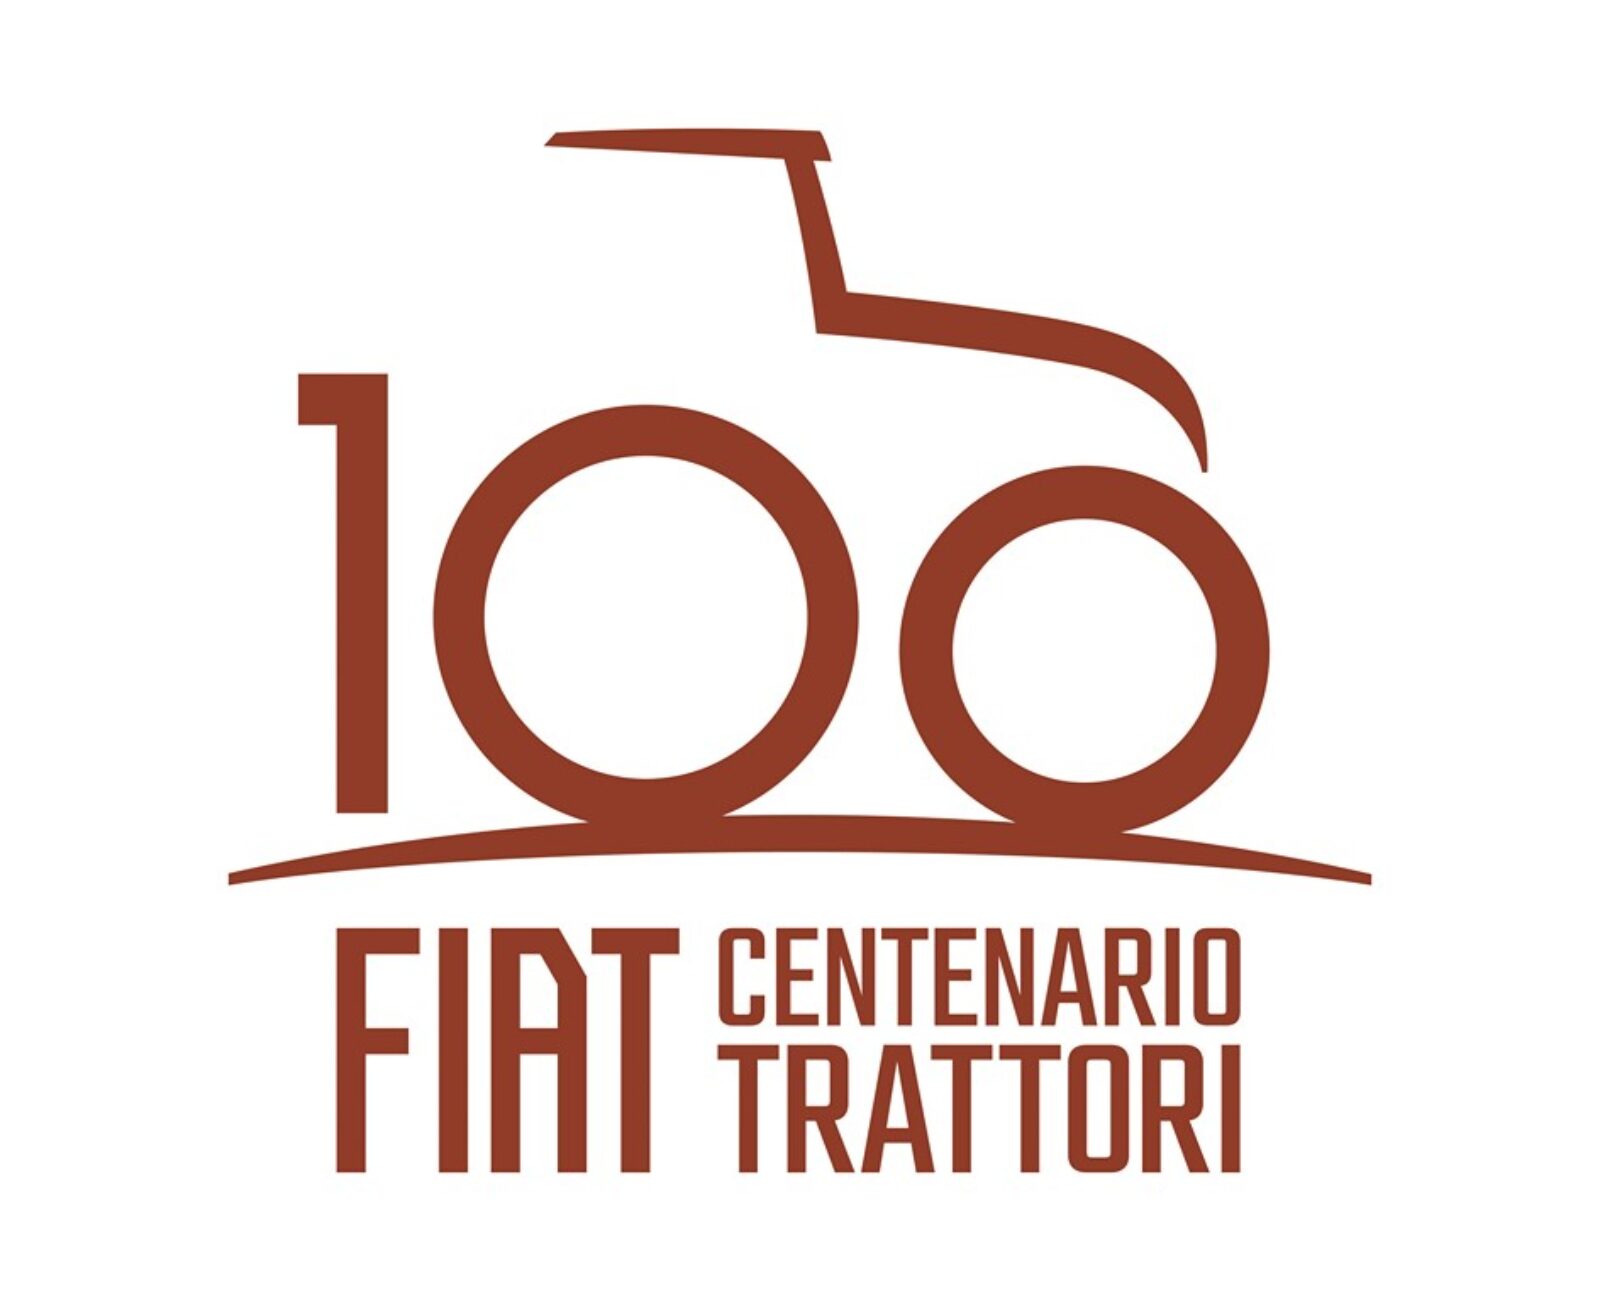 New Holland celebra 100 años del primer tractor FIAT con la gama Fiat Centenario Edición limitada